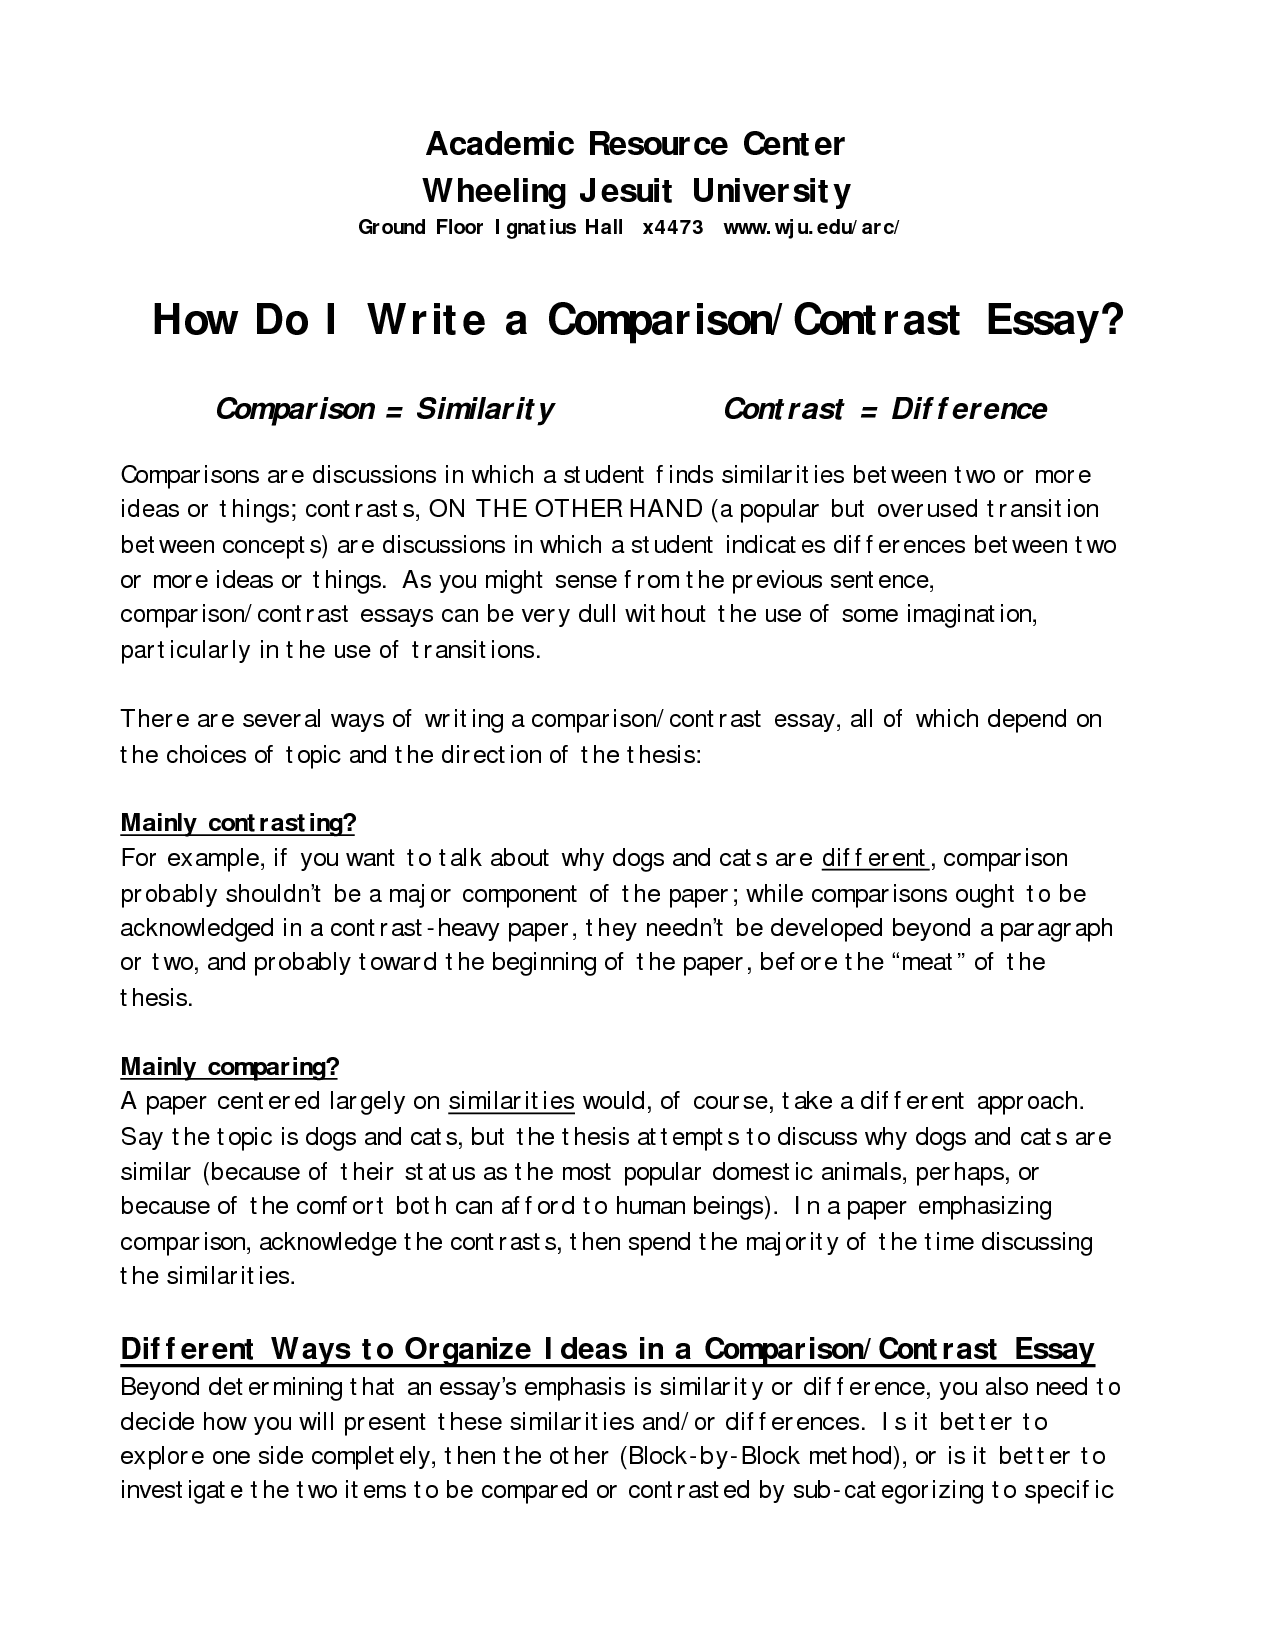 How to write a good compare contrast essay